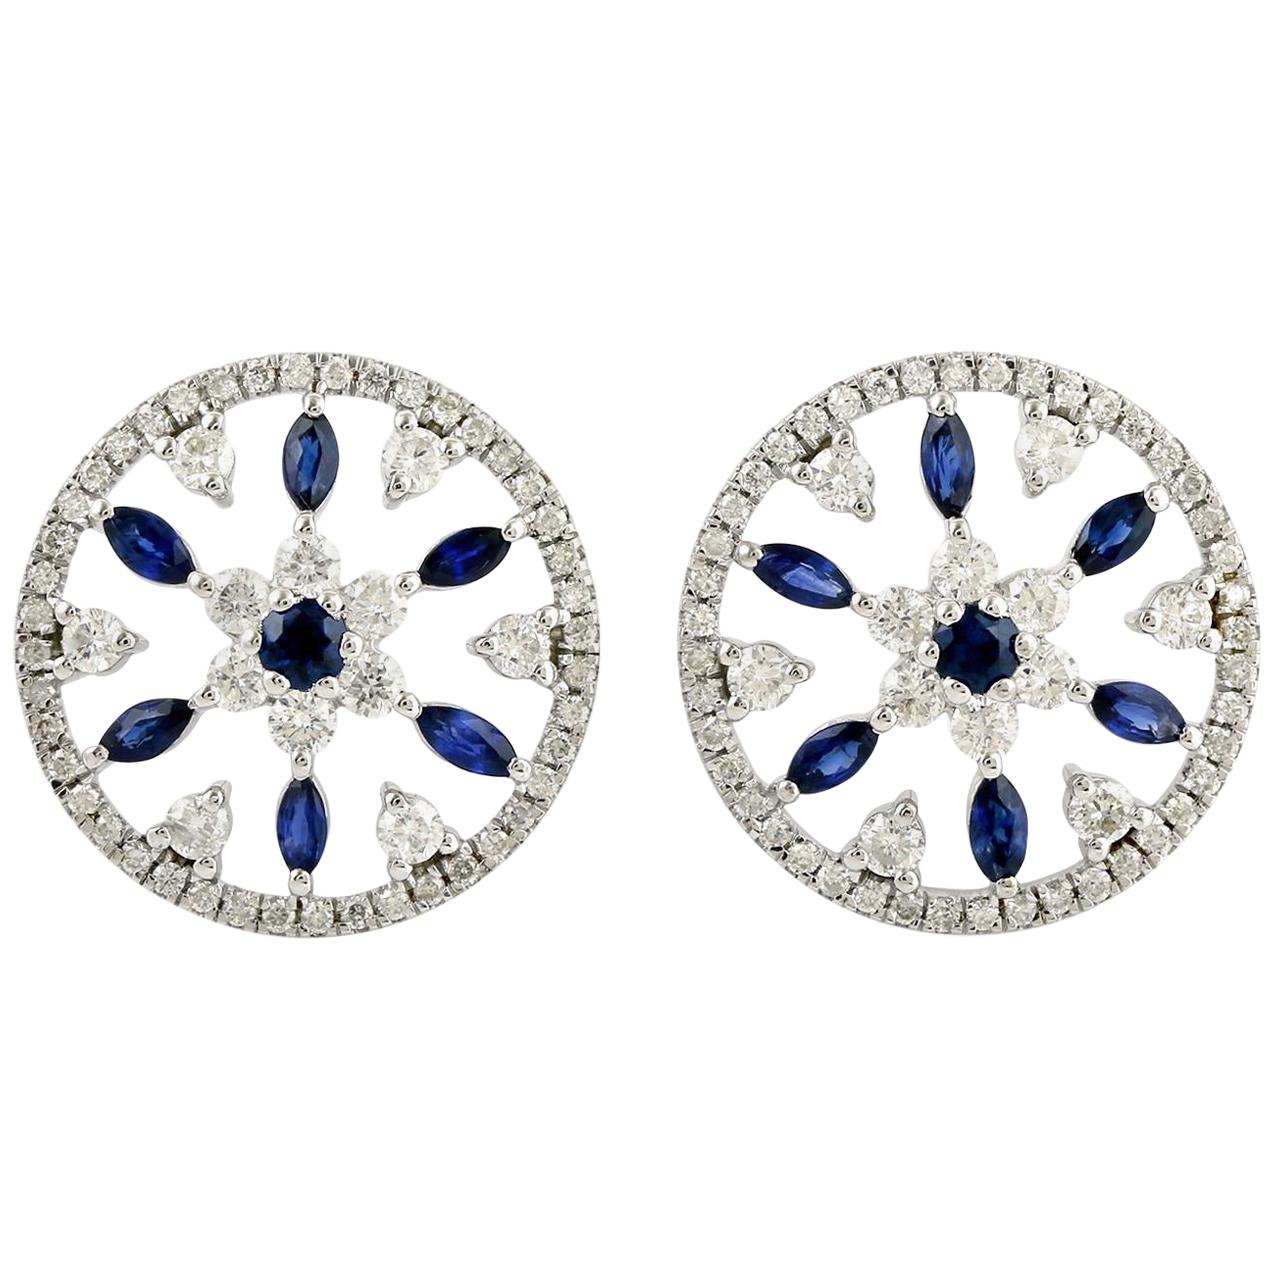 Blue Sapphire Diamond 18 Karat White Gold Flower Stud Earrings